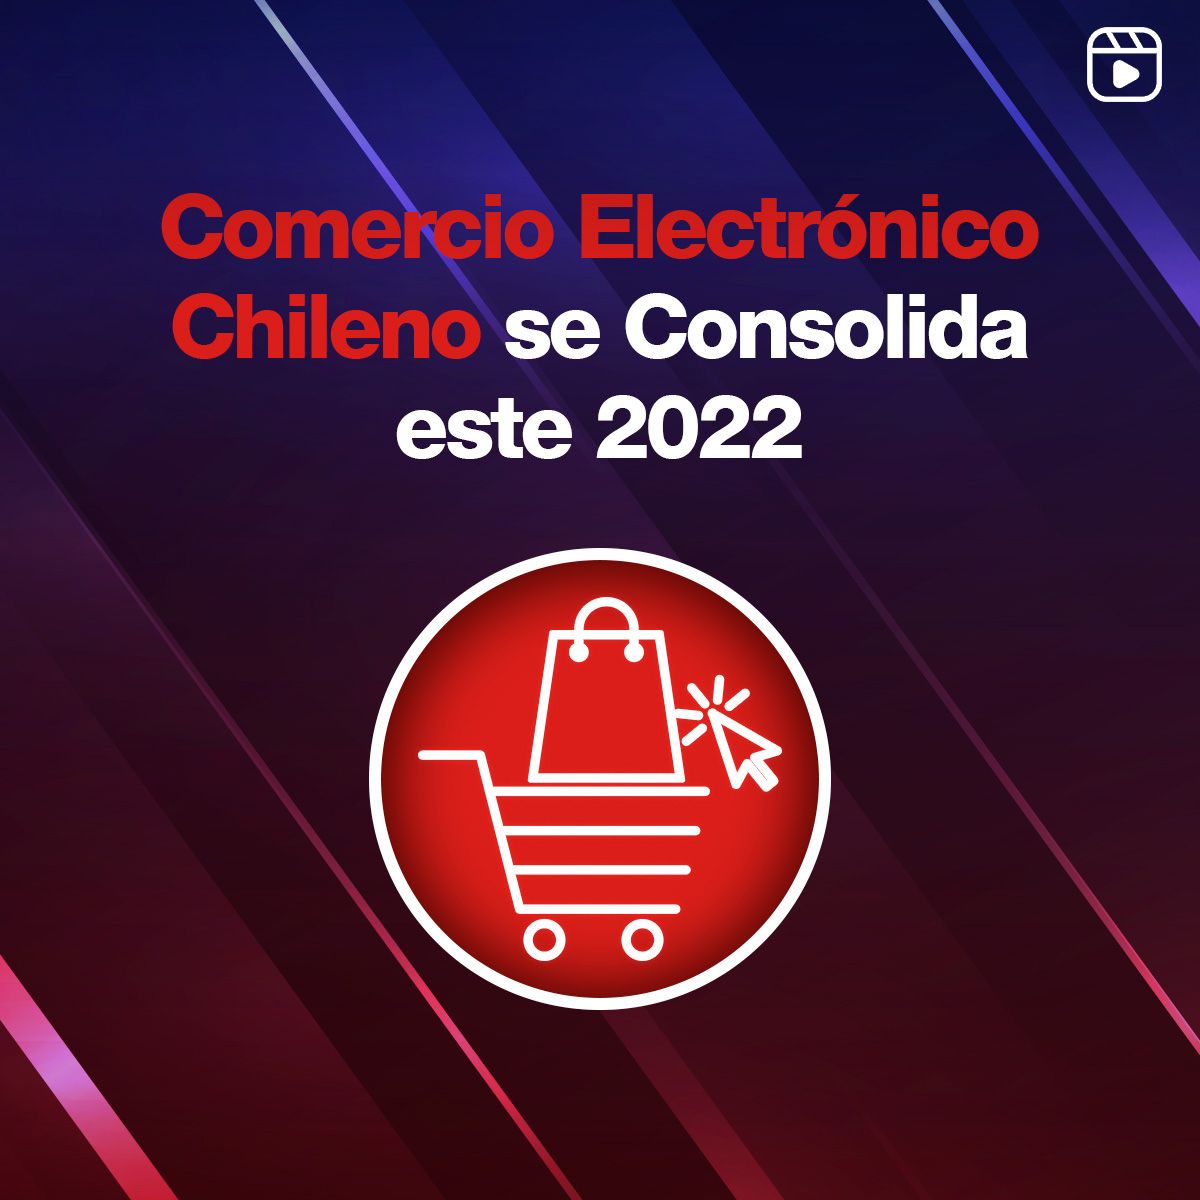 Comercio Electrónico Chileno se Consolida este 2022